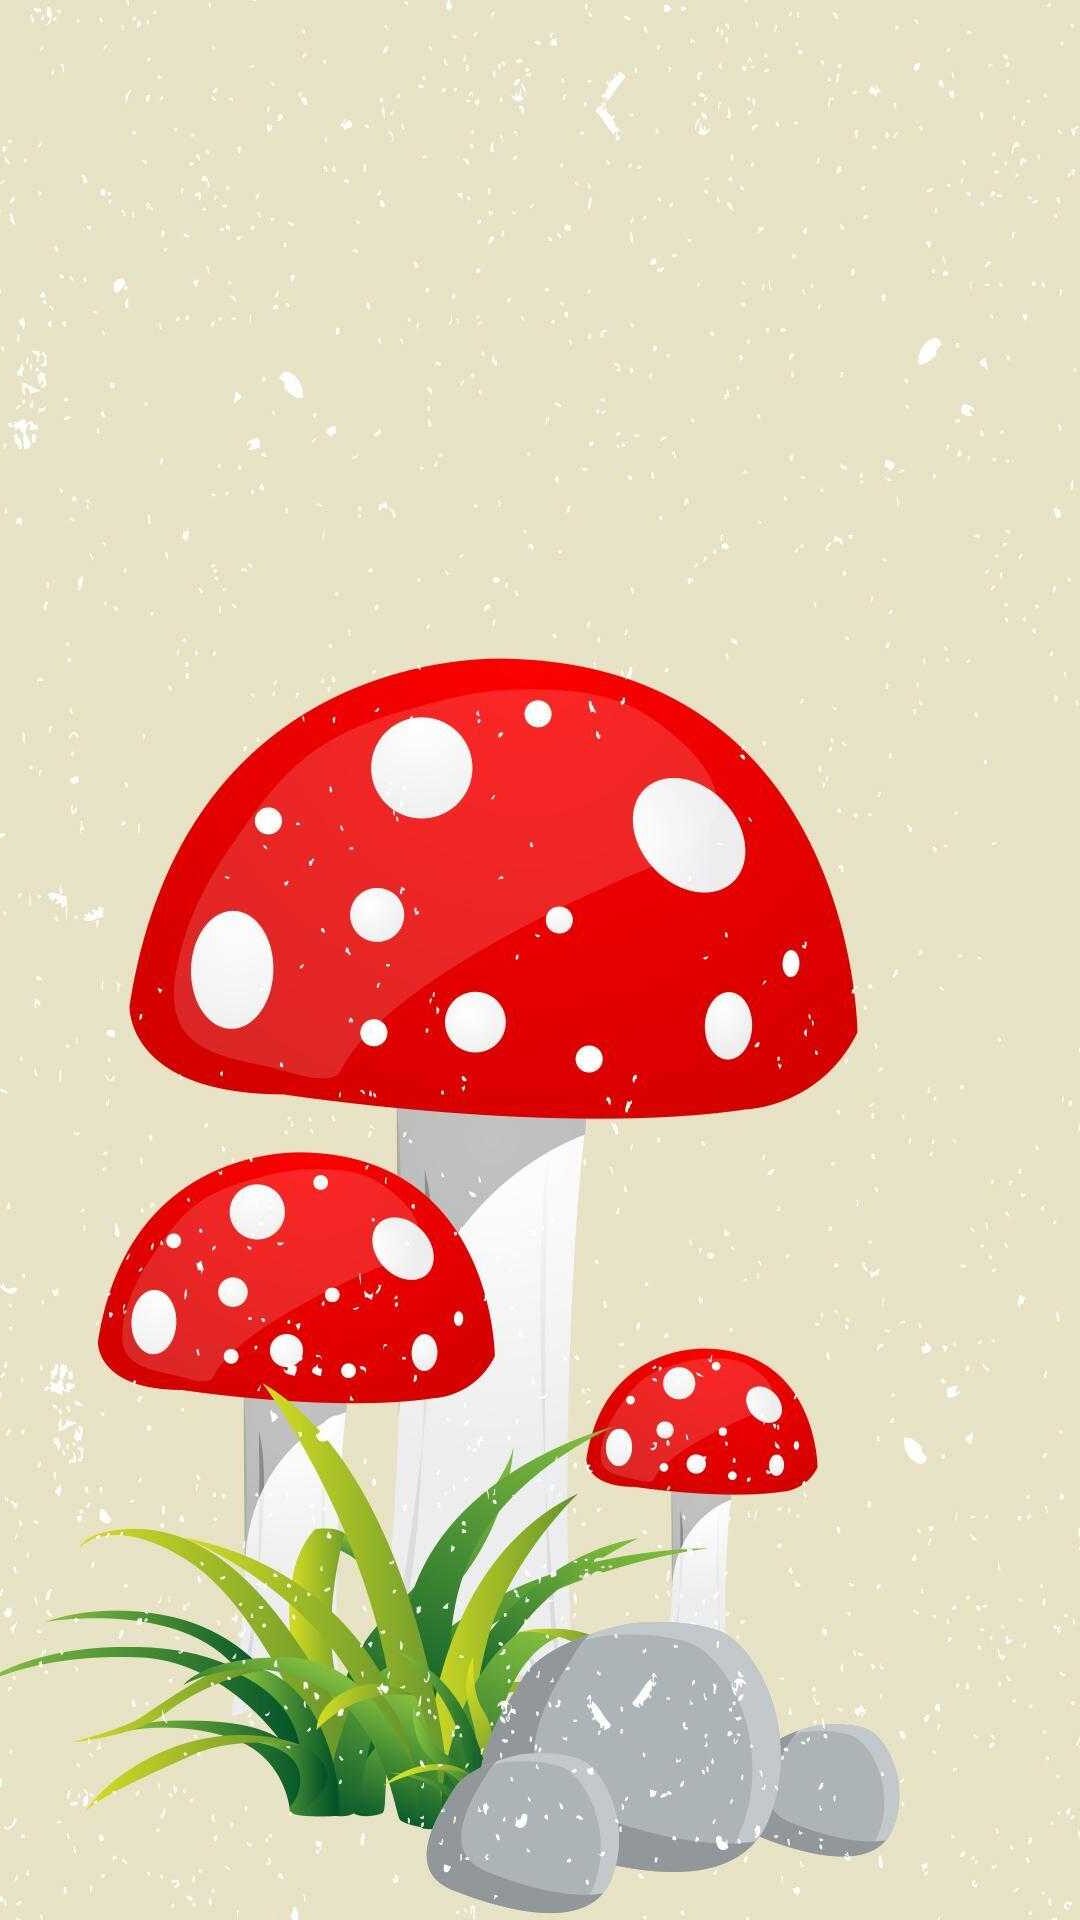 Mushroom forest Wallpaper 4K Surreal AI art Fantasy 10854